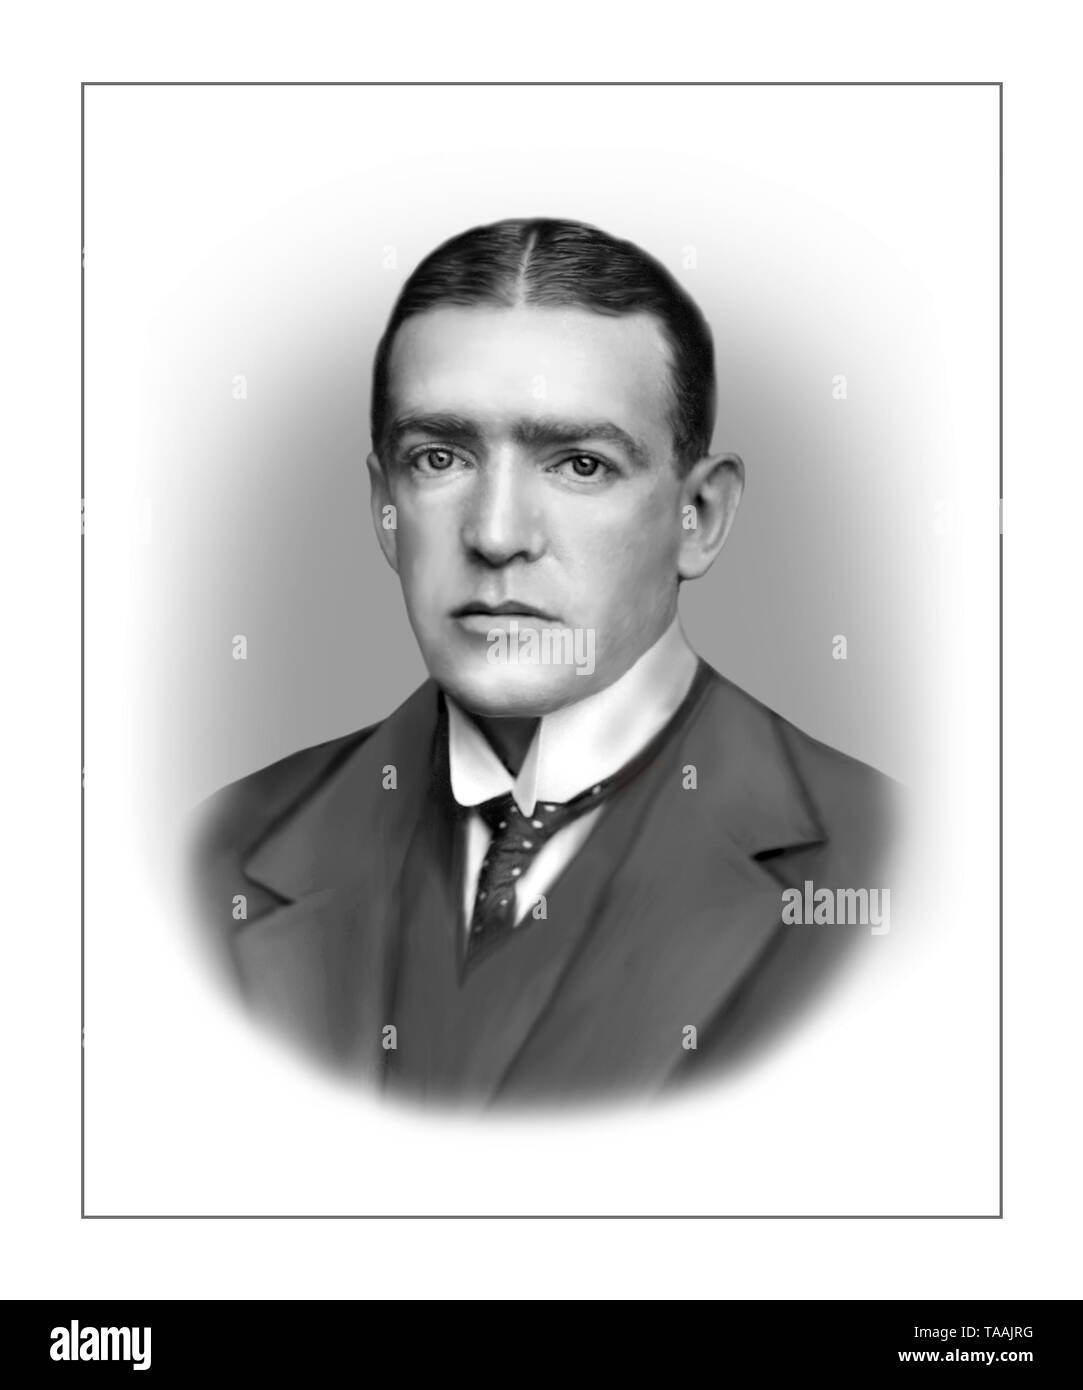 Sir Ernest Henry Shackleton explorateur polaire Britannique 1874-1922 Banque D'Images